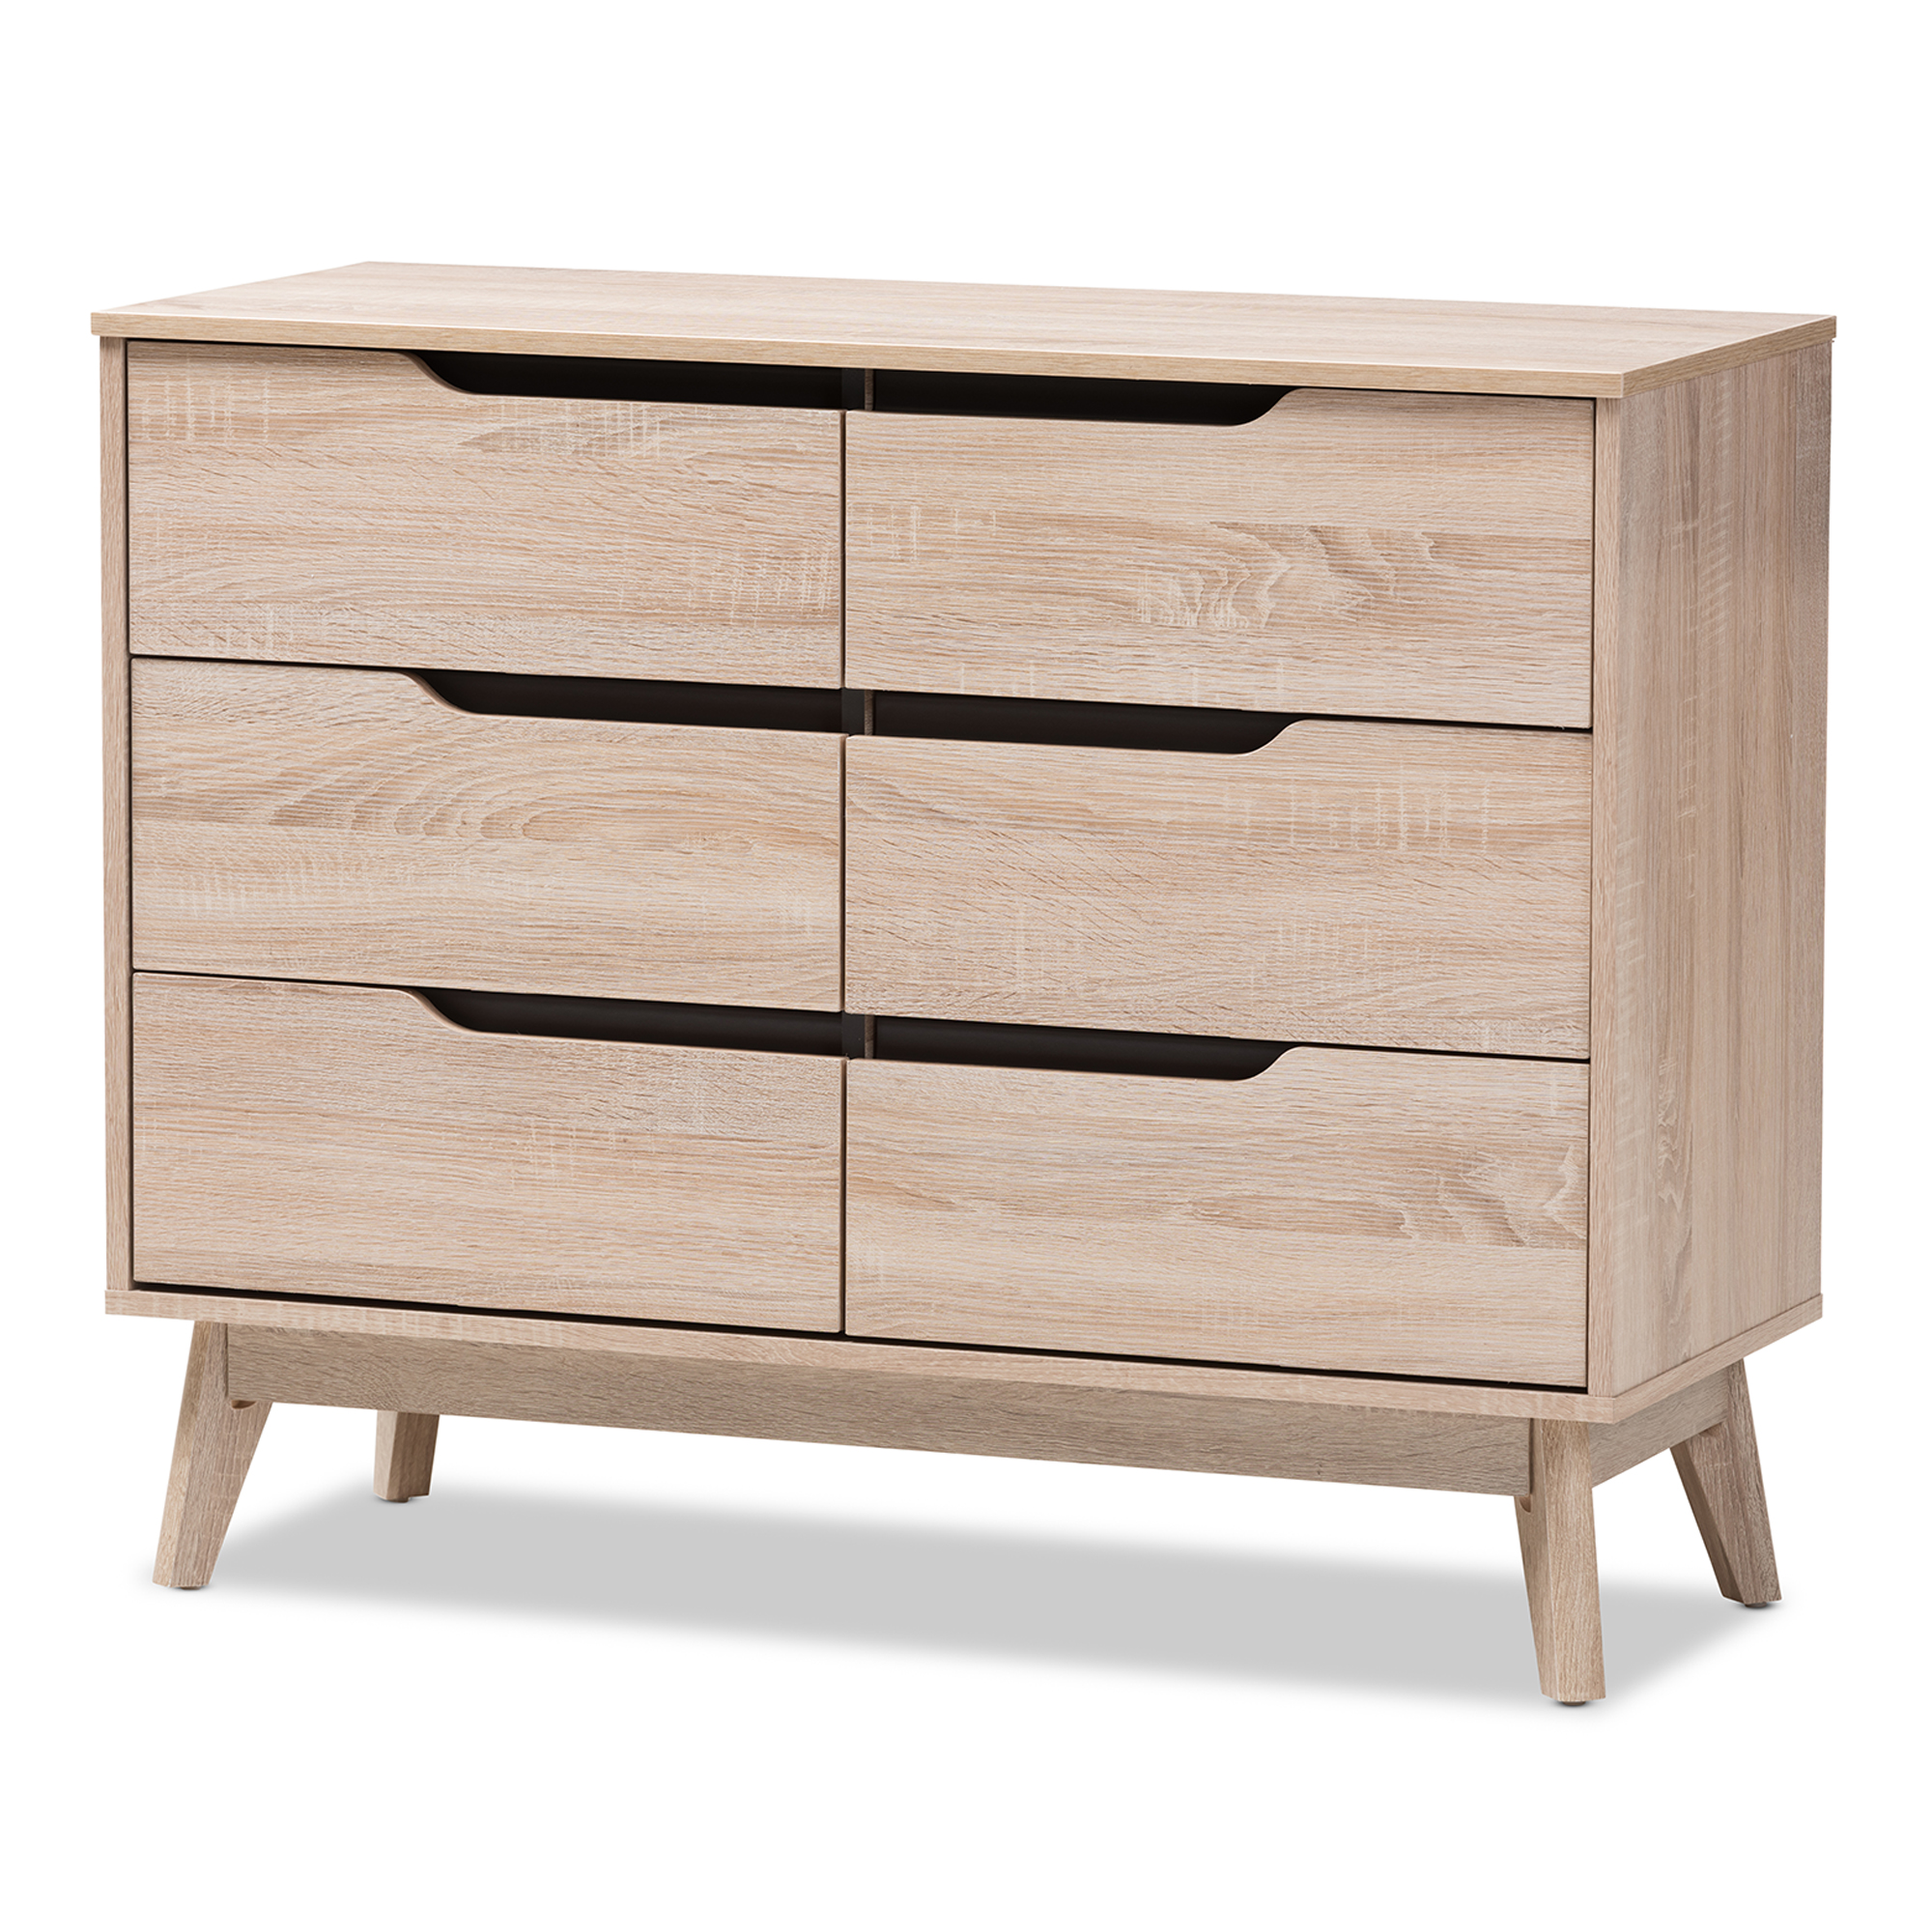 Baxton Studio Fella Mid-Century Modern Two-Tone Oak and Grey Wood 6-Drawer Dresser